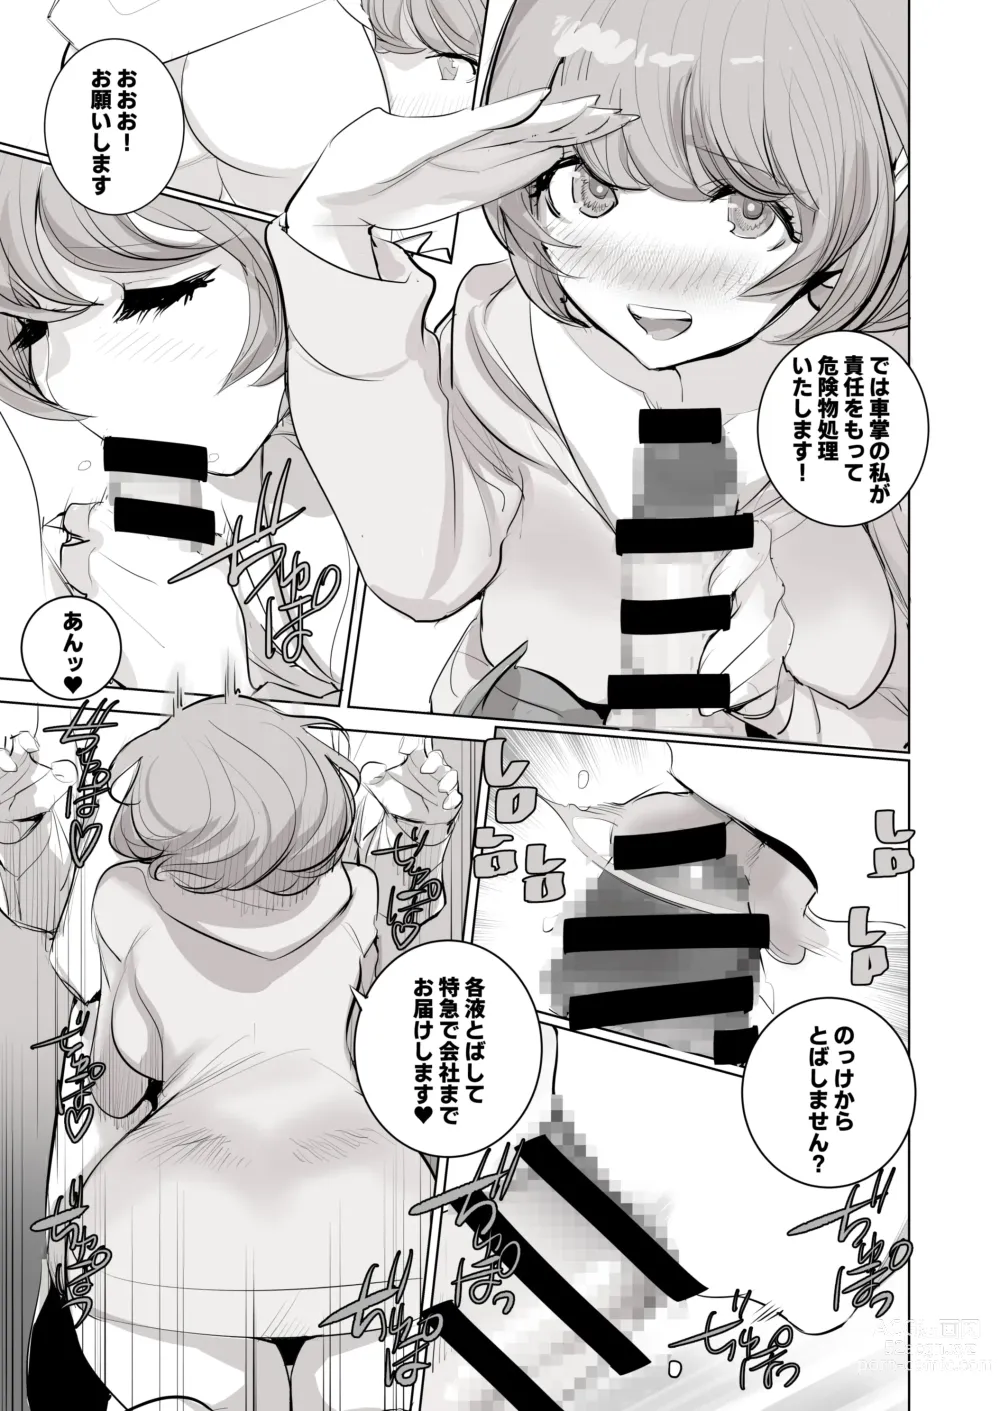 Page 8 of doujinshi 人気同人作家の妻とラブラブ新婚性活でも妻が好きすぎてNTRしてしまうボクなんです